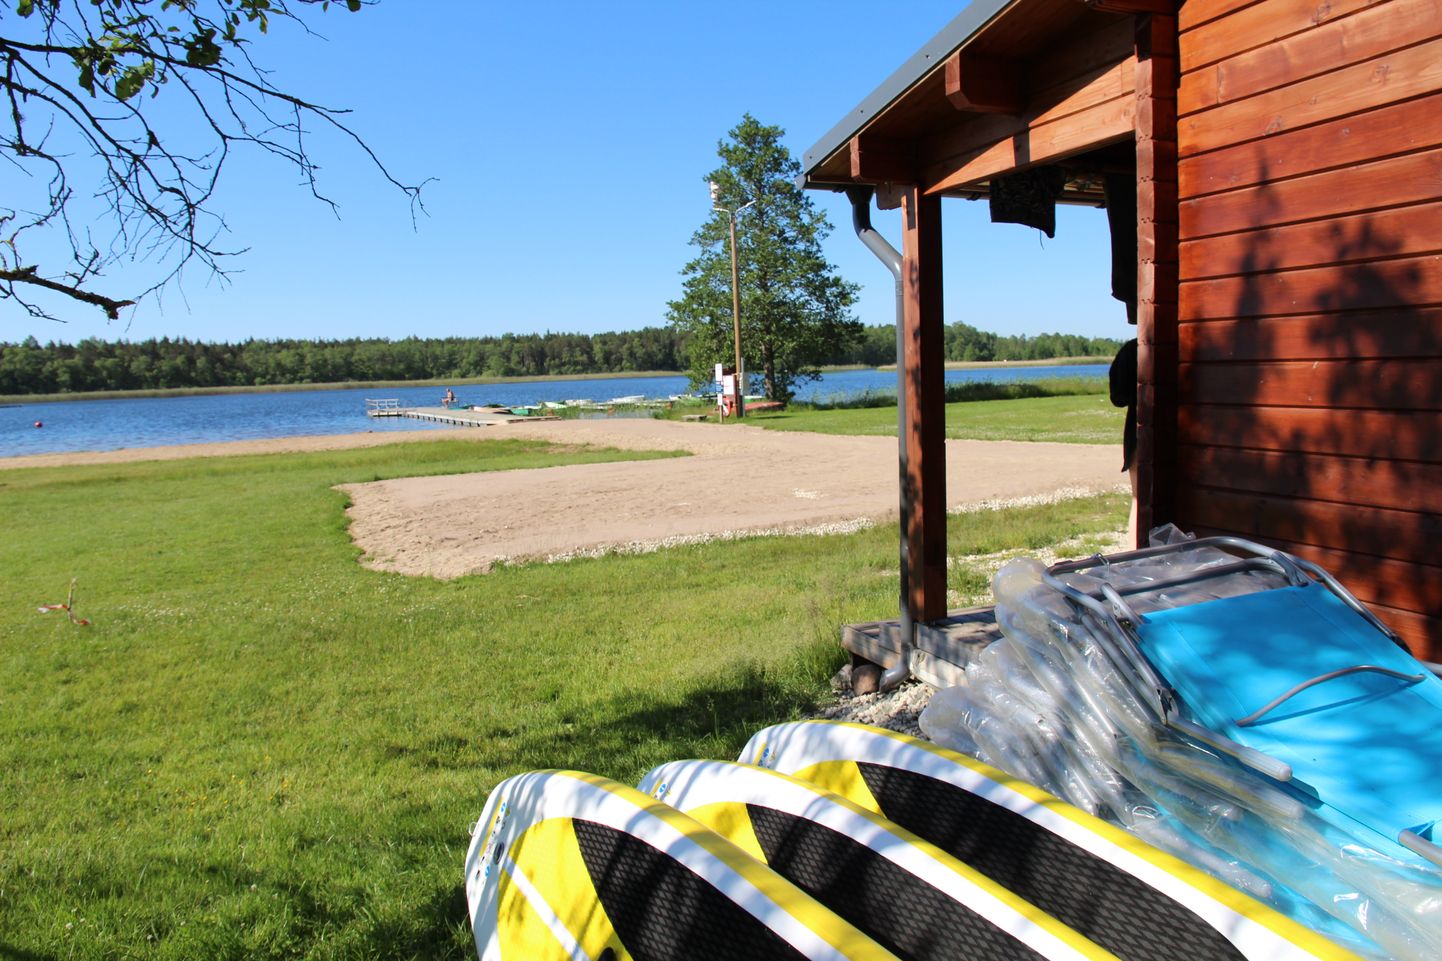 Uus plats Väinjärve ääres, kus kalamehed mahuvad ka autoga manööverdama.